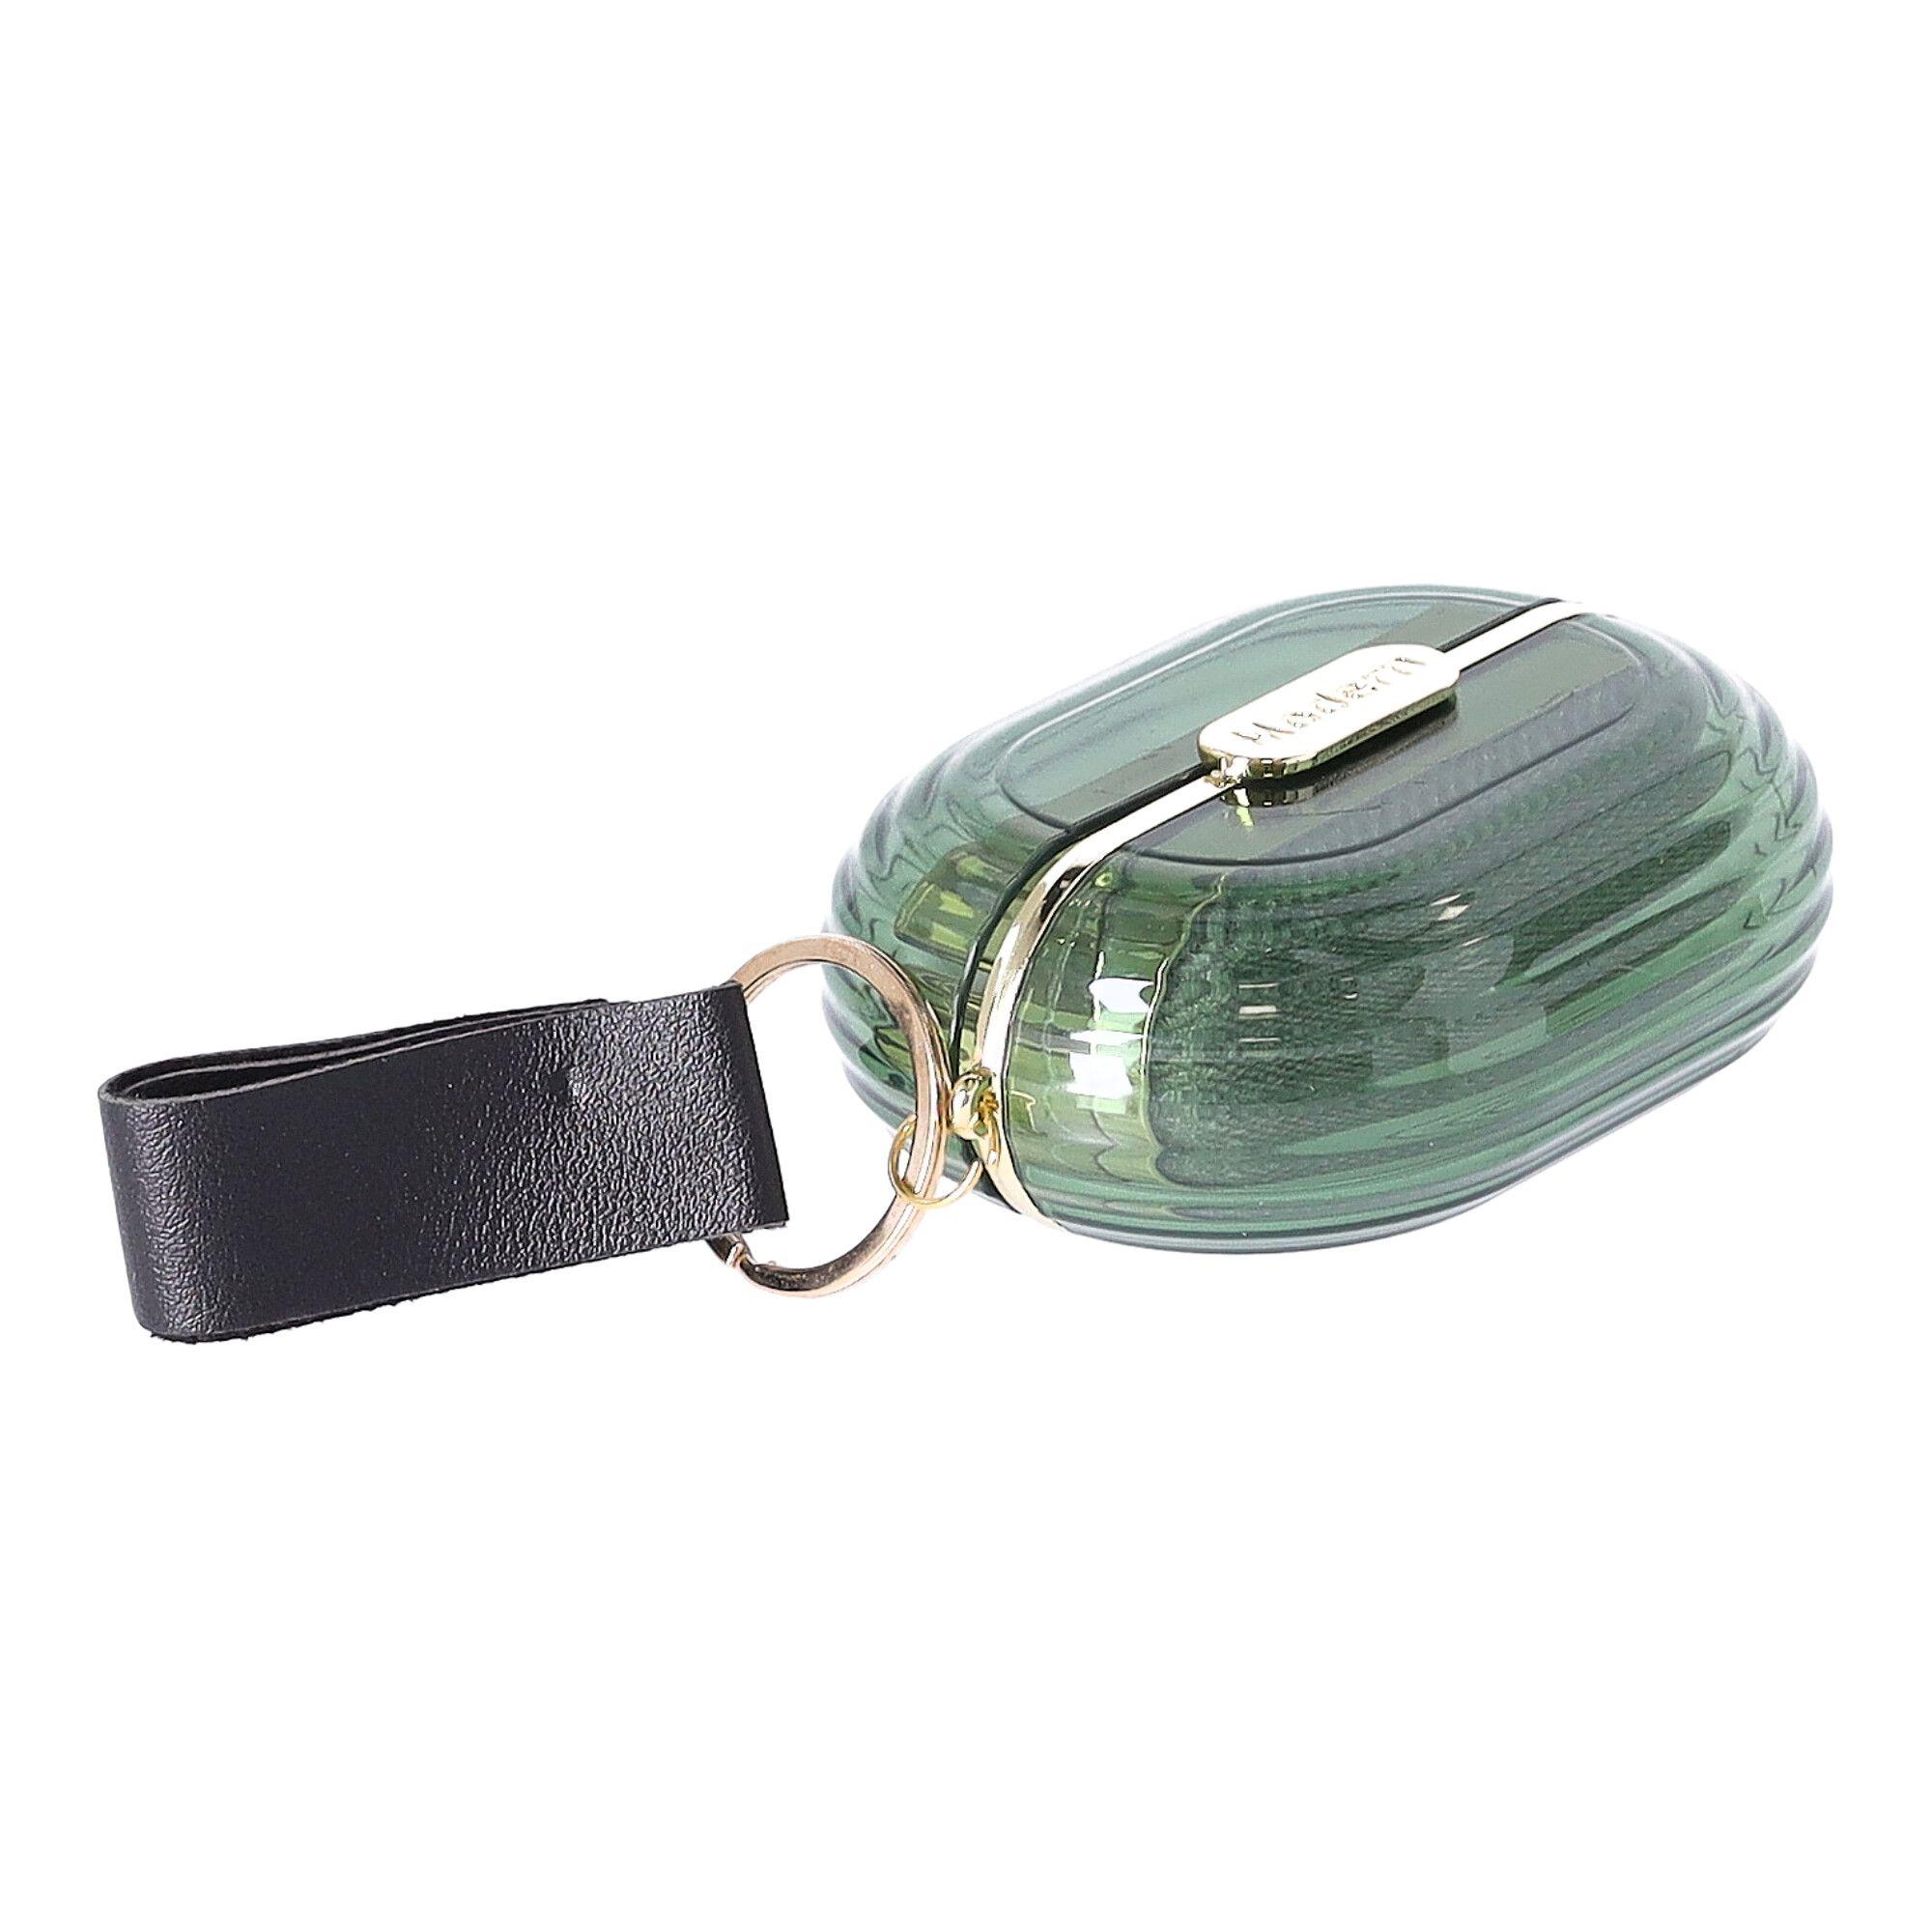 Portable mini lint remover brush - green